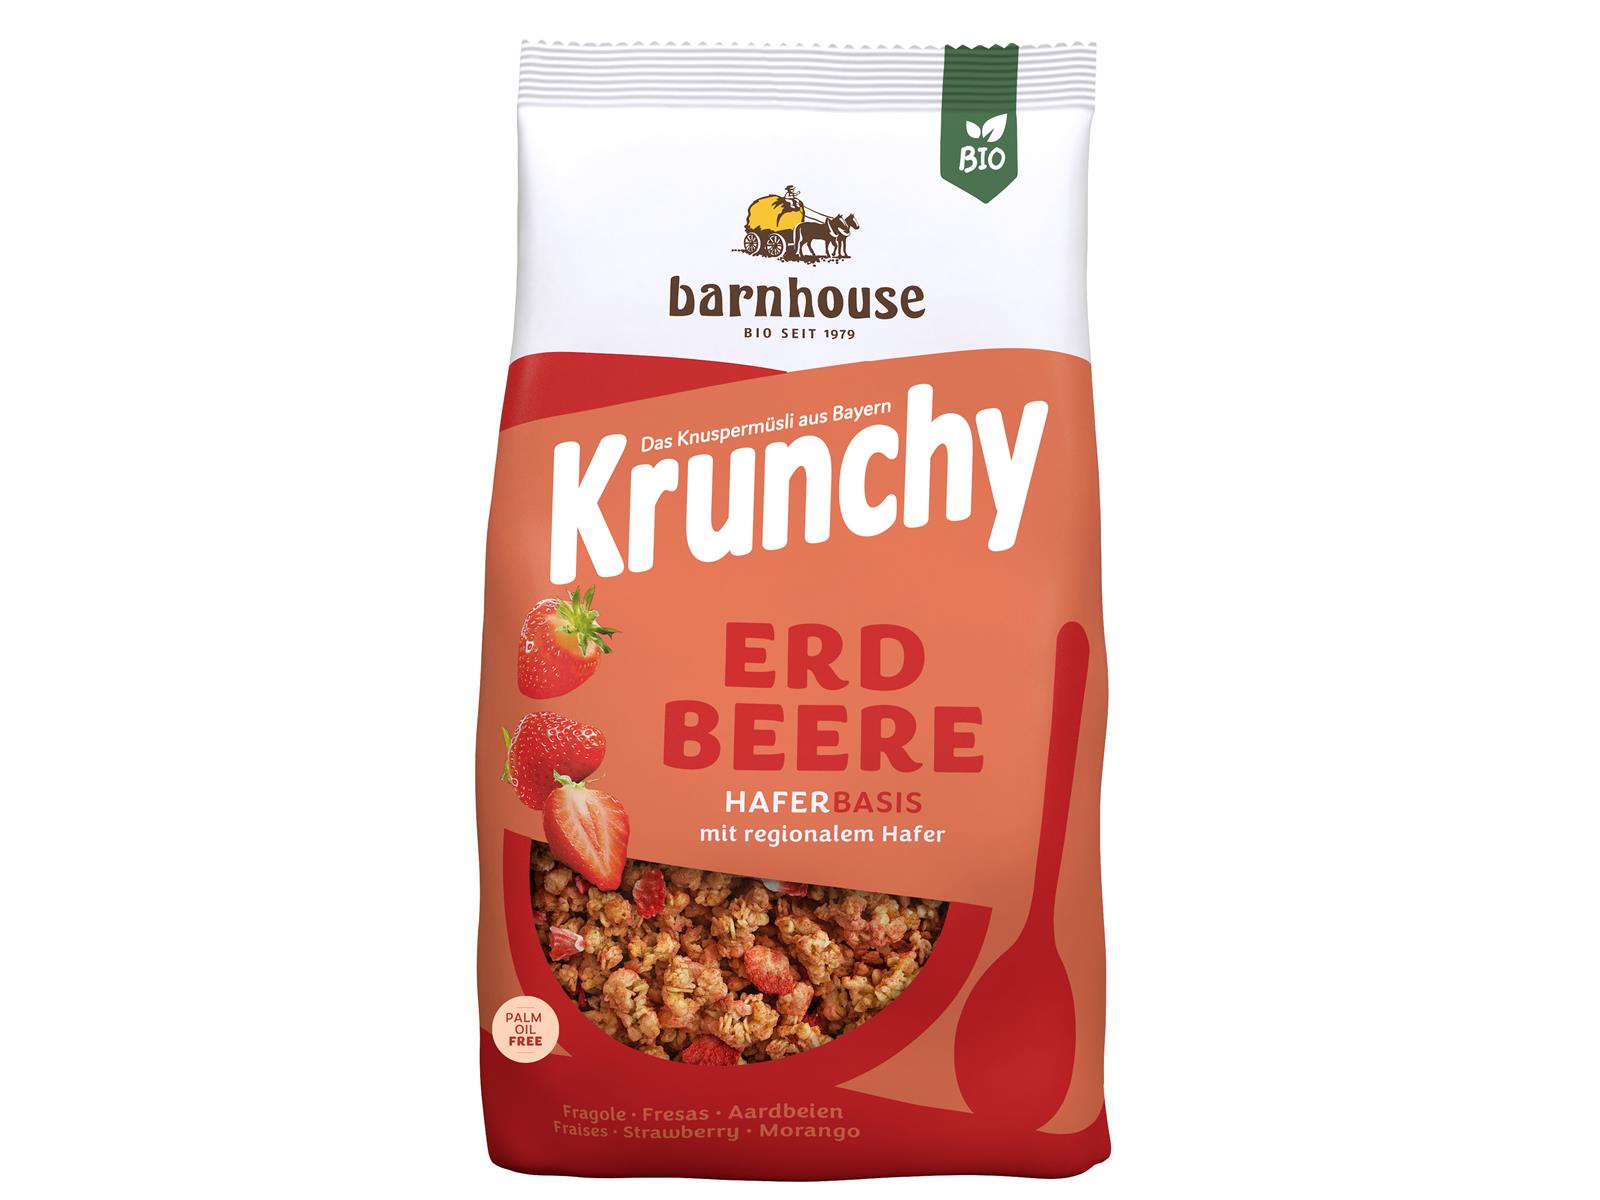 Barnhouse Krunchy Erdbeer 375g